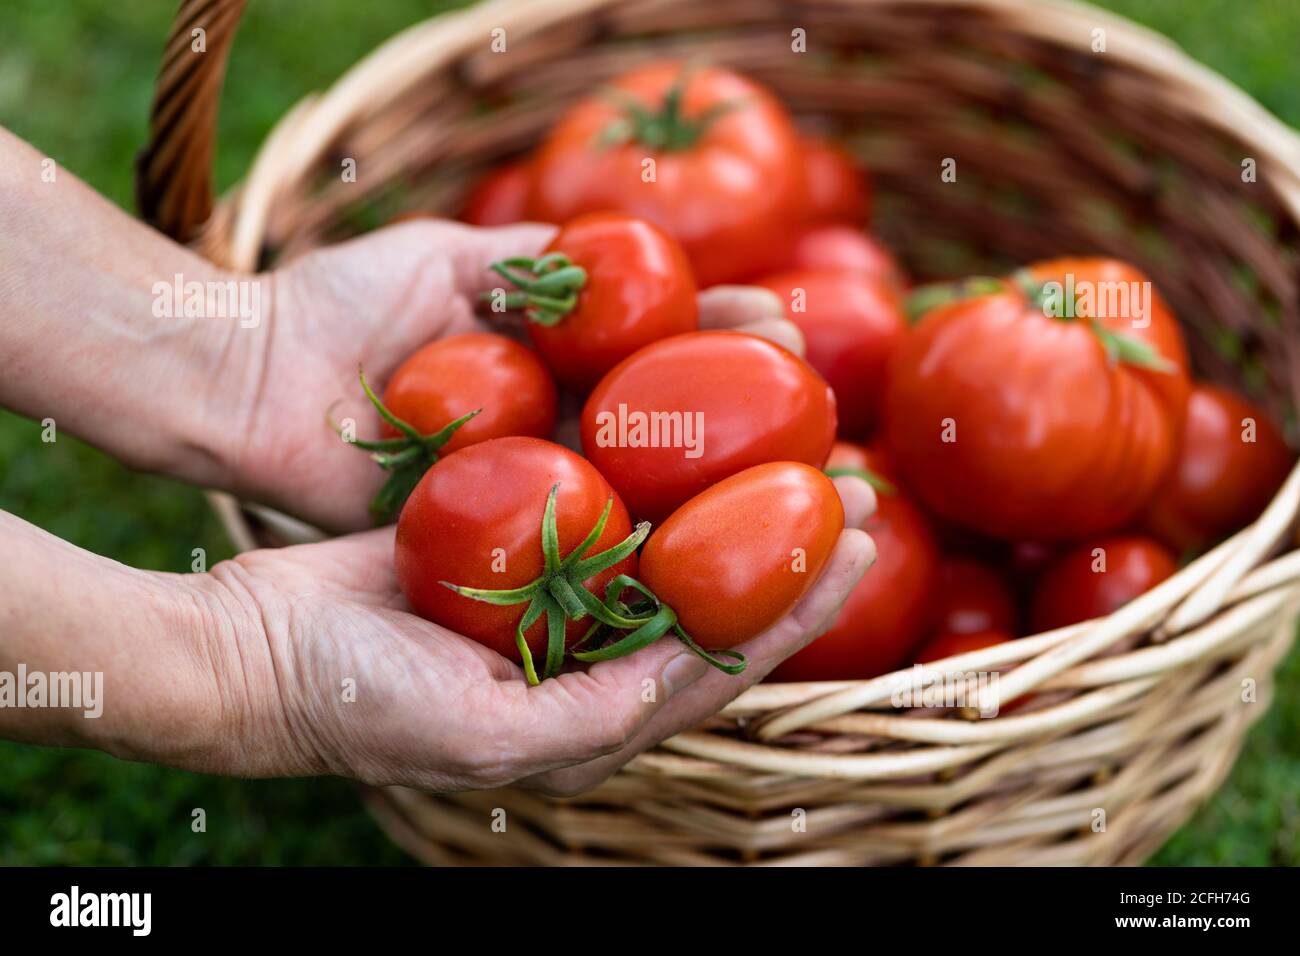 Donna contadina mani che tengono pomodori raccolti, cesto di pomodori appena raccolti su erba verde. Foto Stock